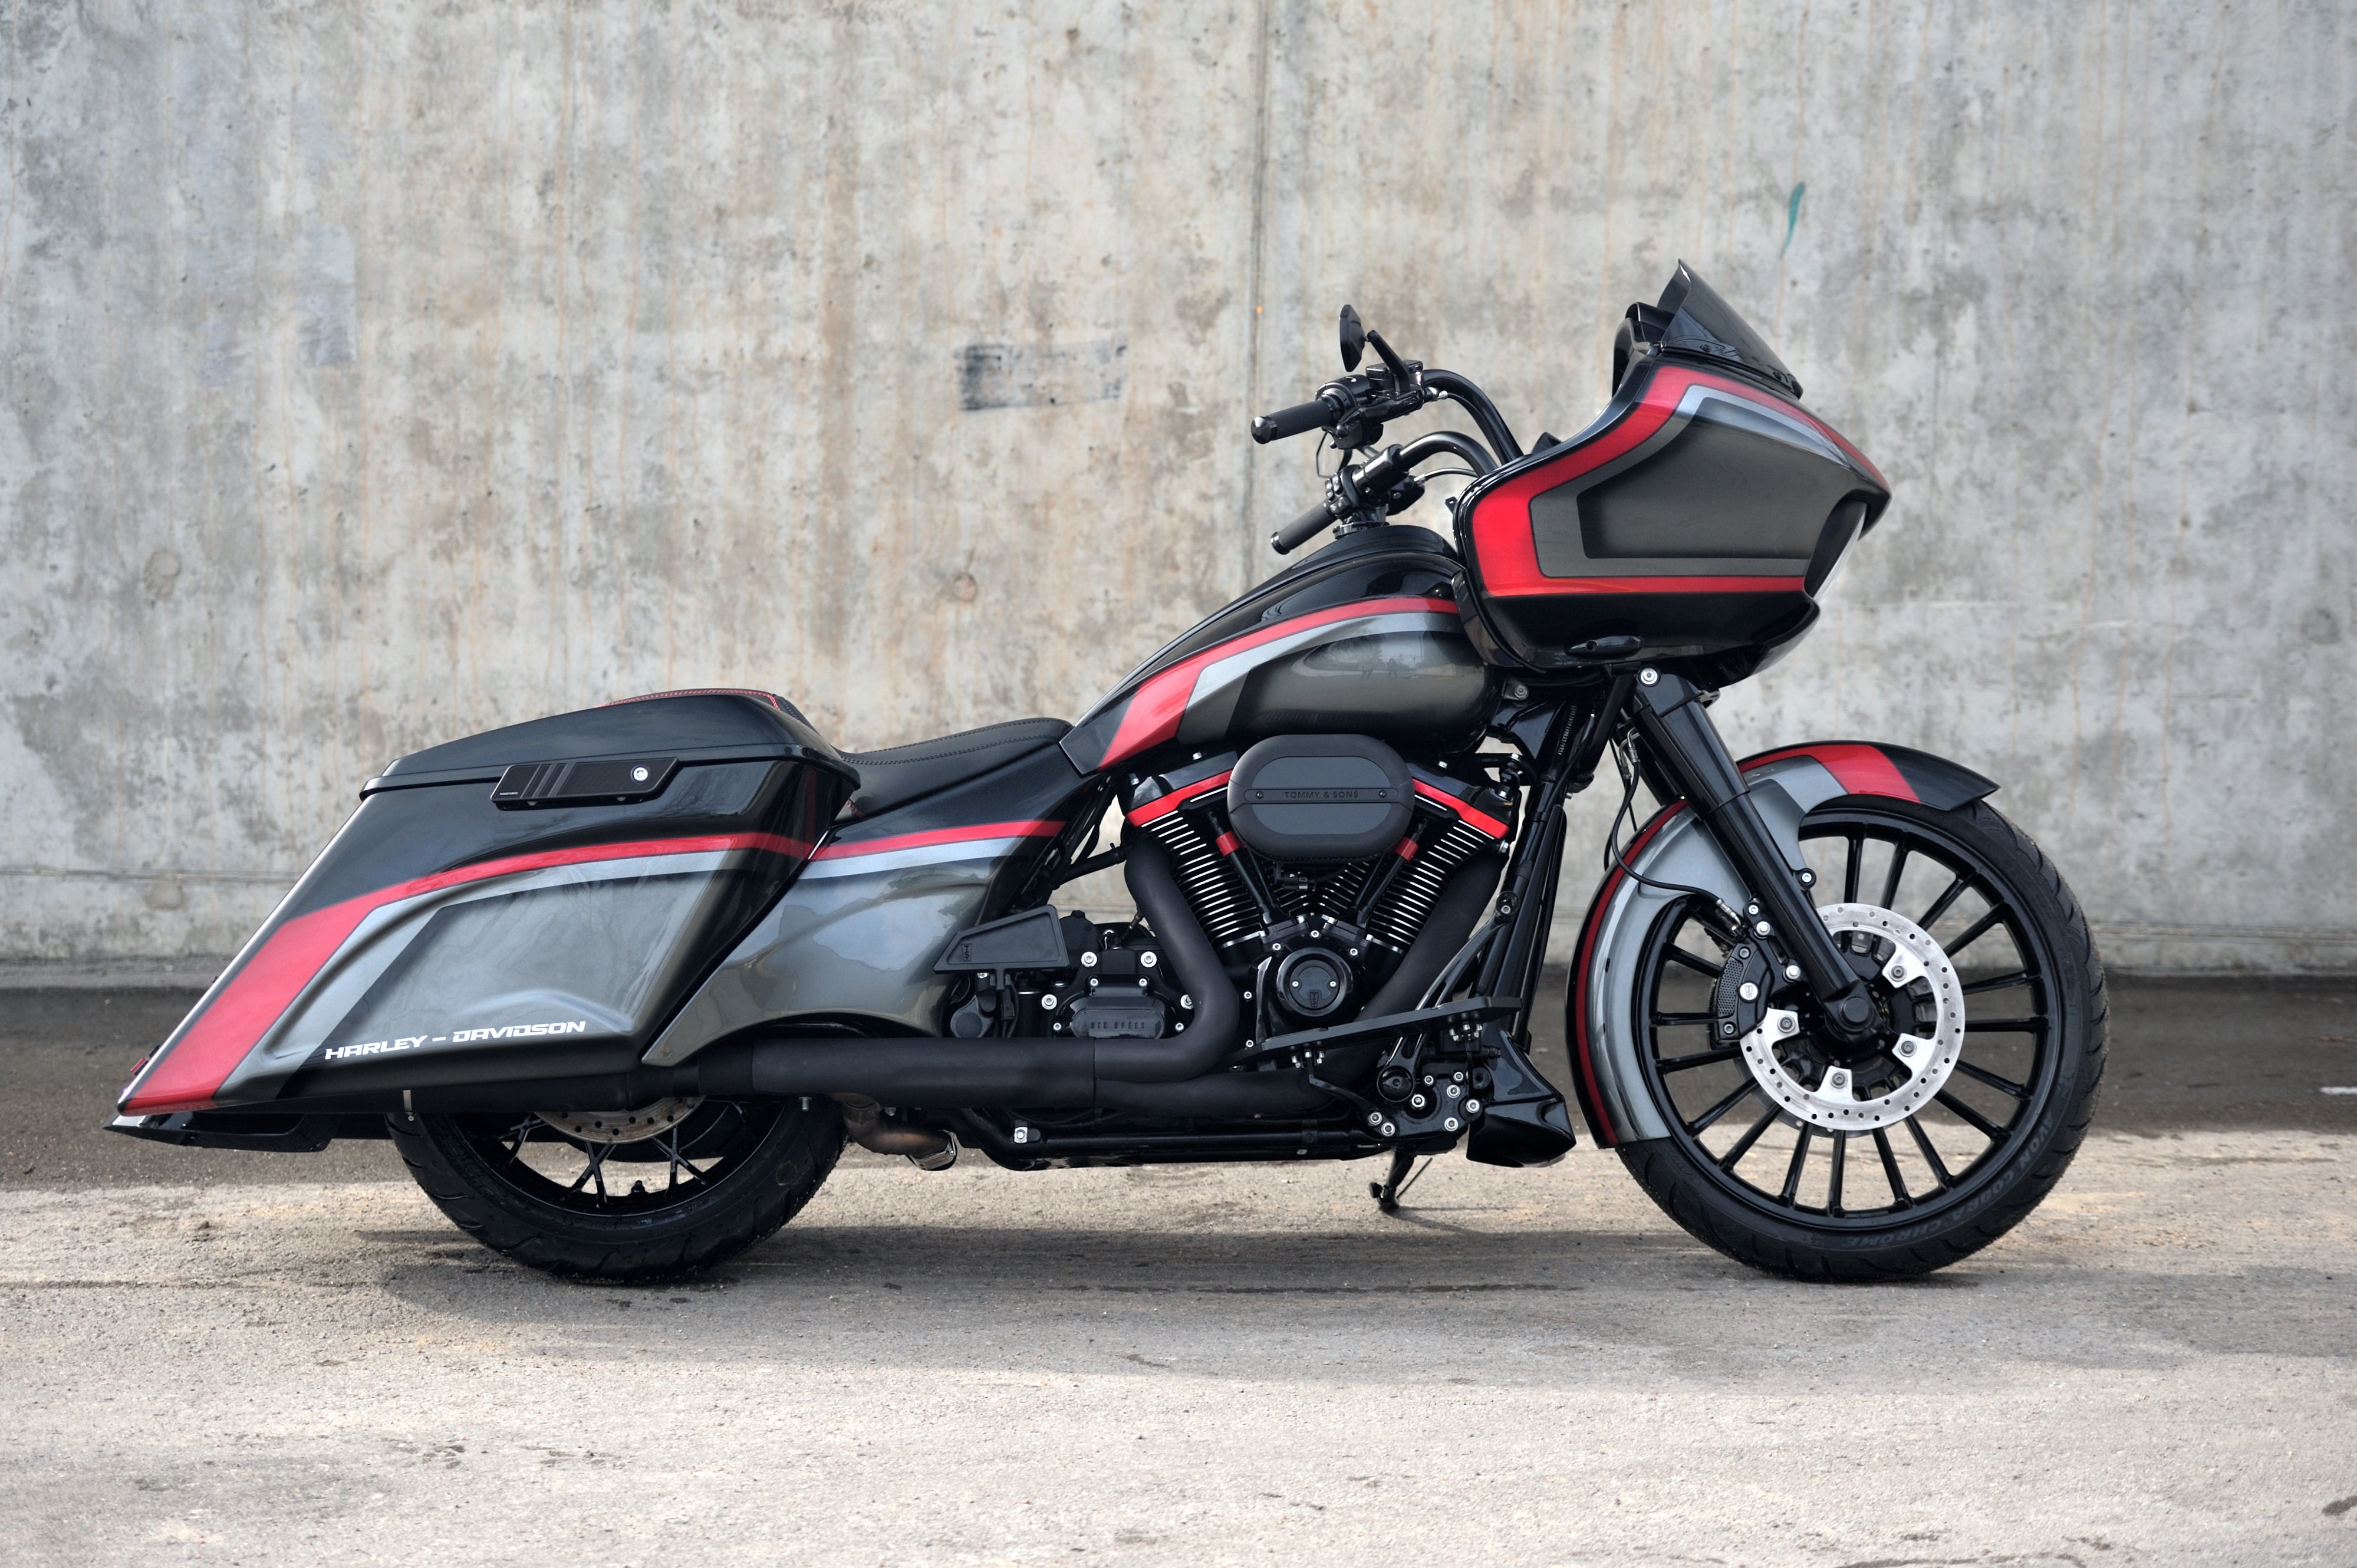 Magnus side cover and tank shroud set for Harley Davidson Touring (Street Glide, Road Glide, Road King) 2014-2023 models red side